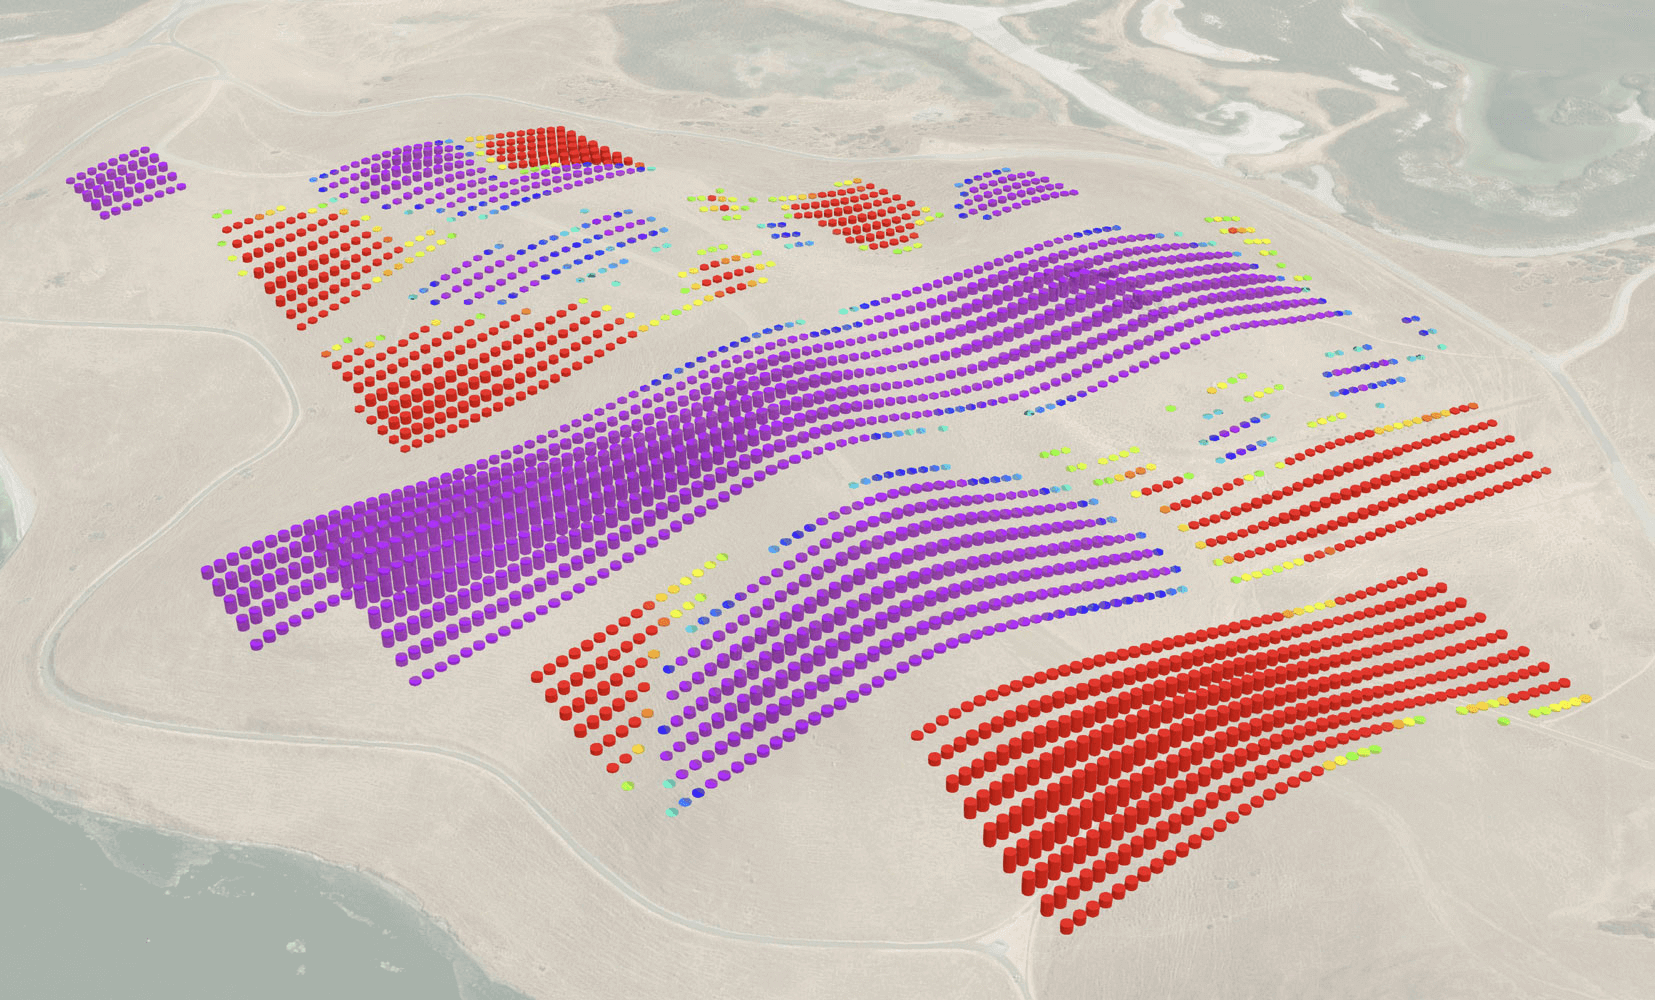 Screenshot of software showing solar field in desert region